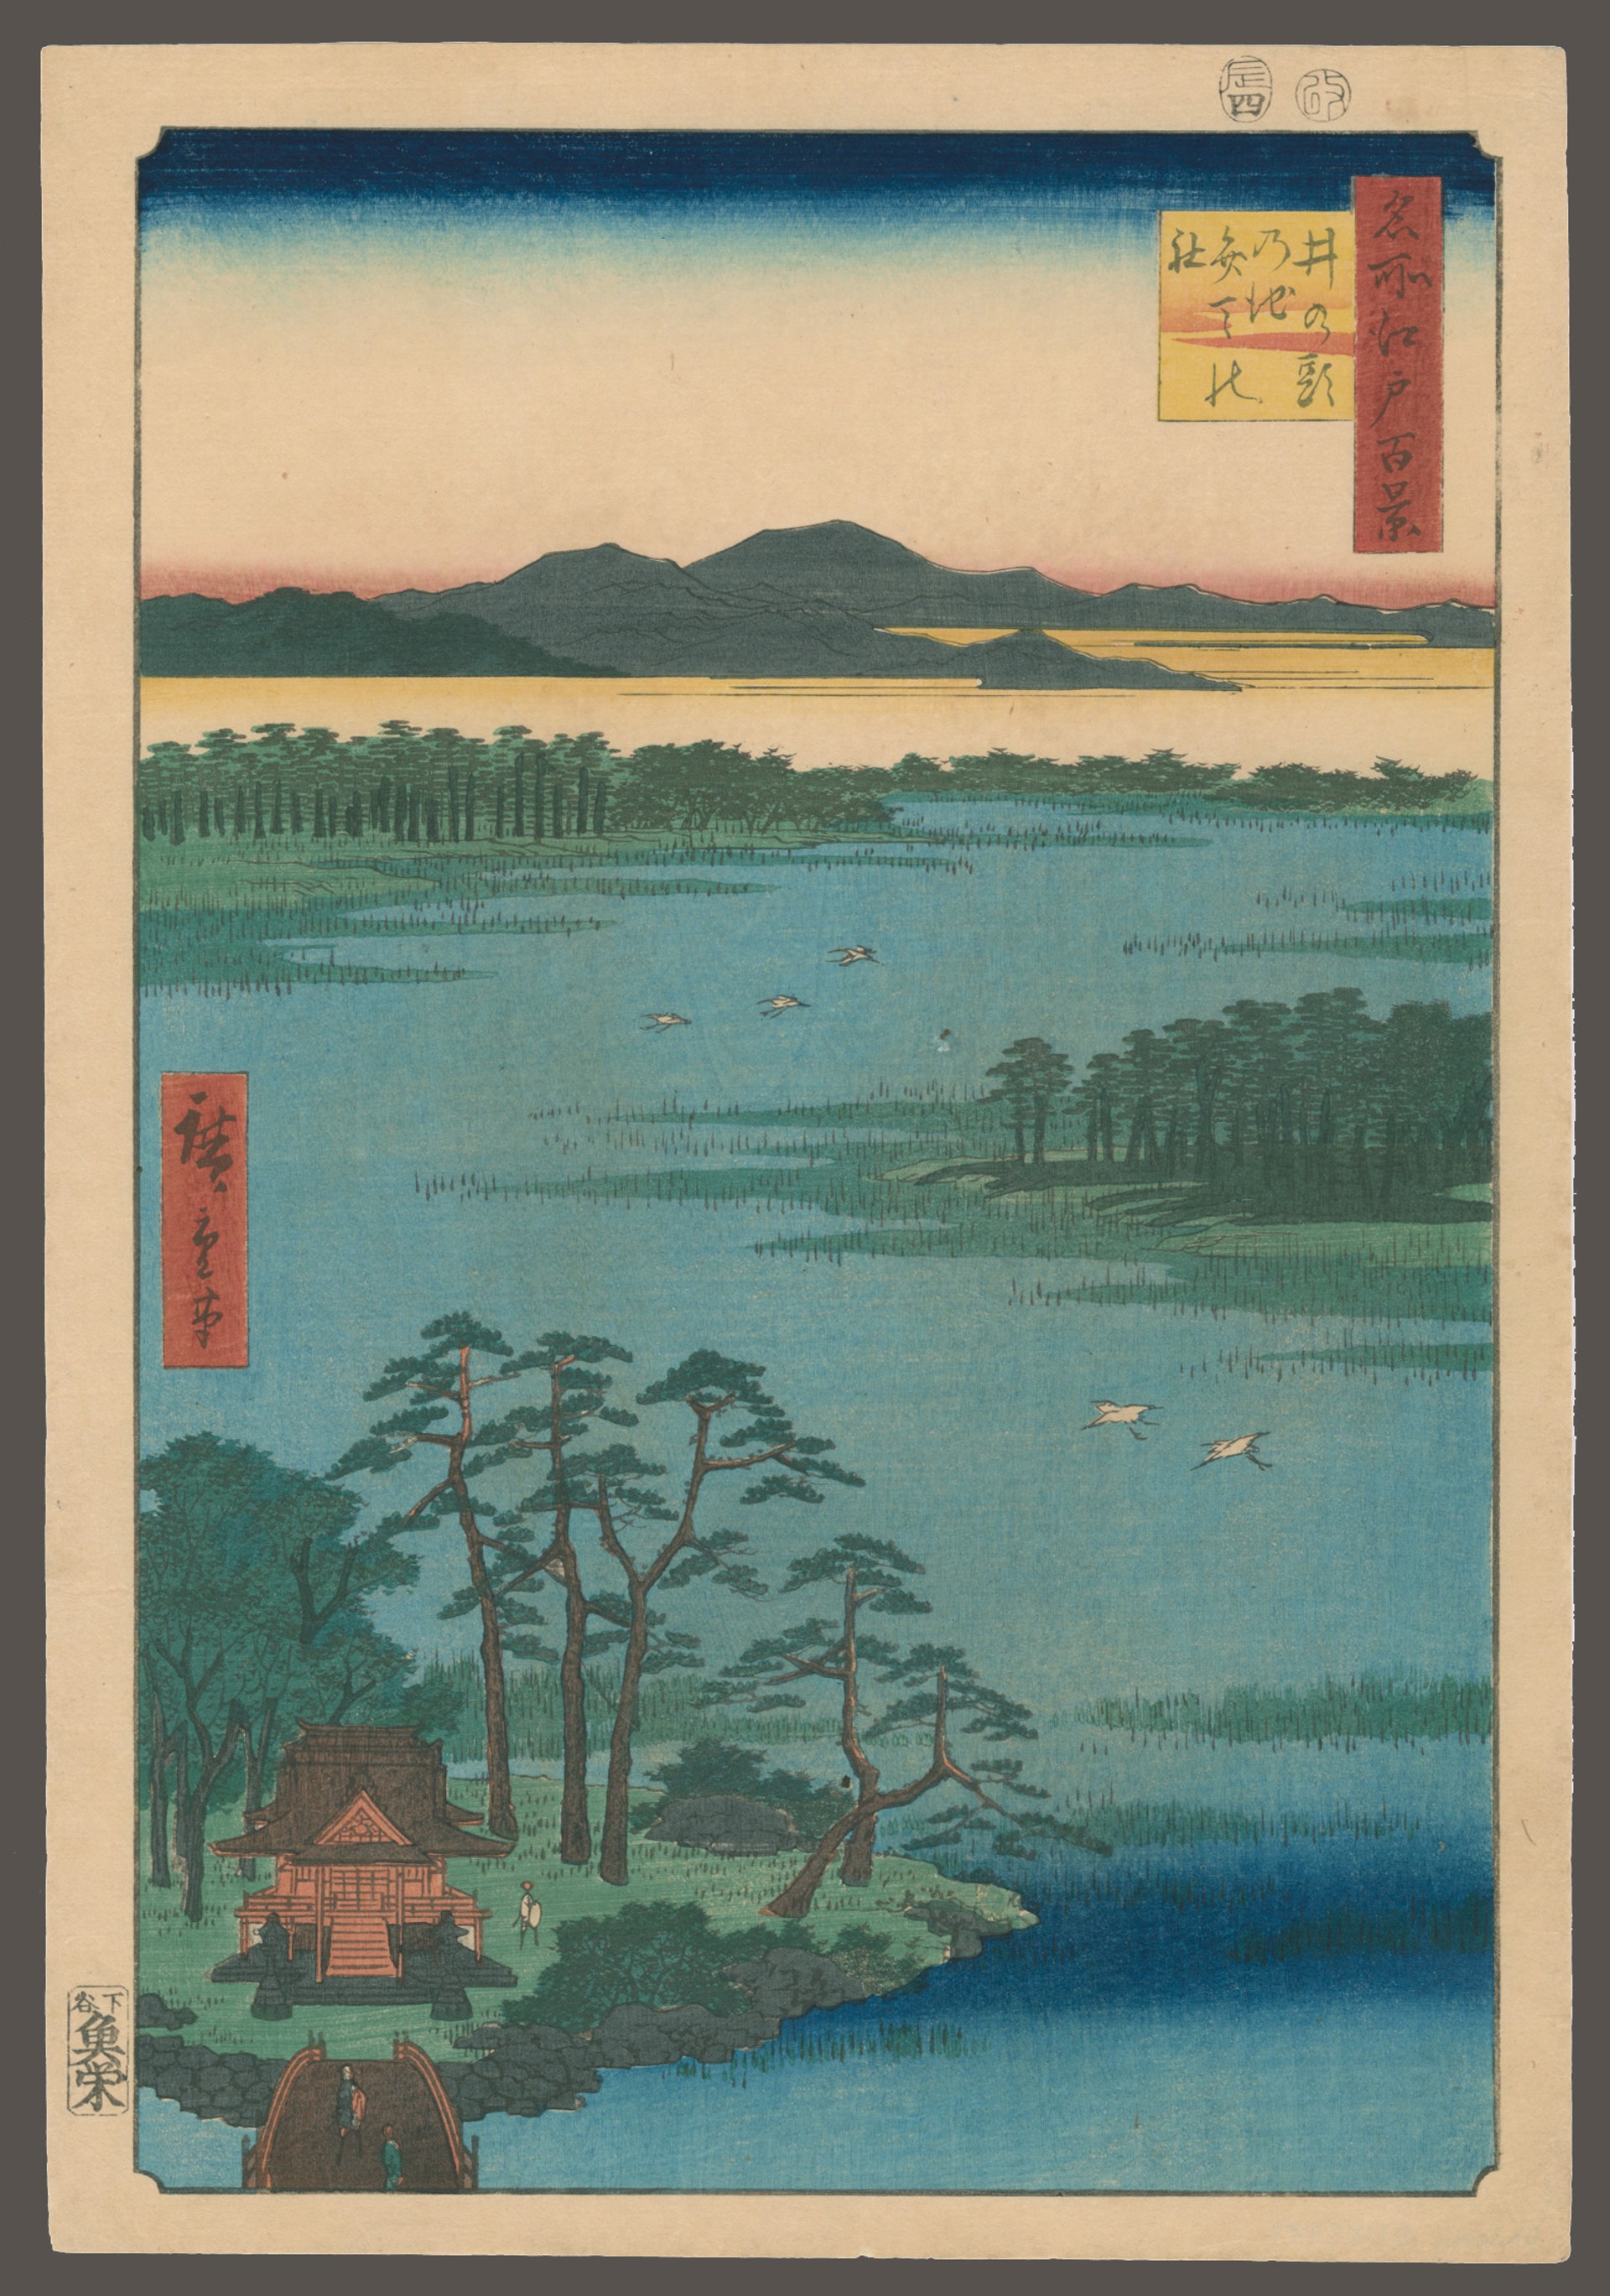 #87 The Benten Shrine, Inogashira Pond 100 Views of Edo by Hiroshige